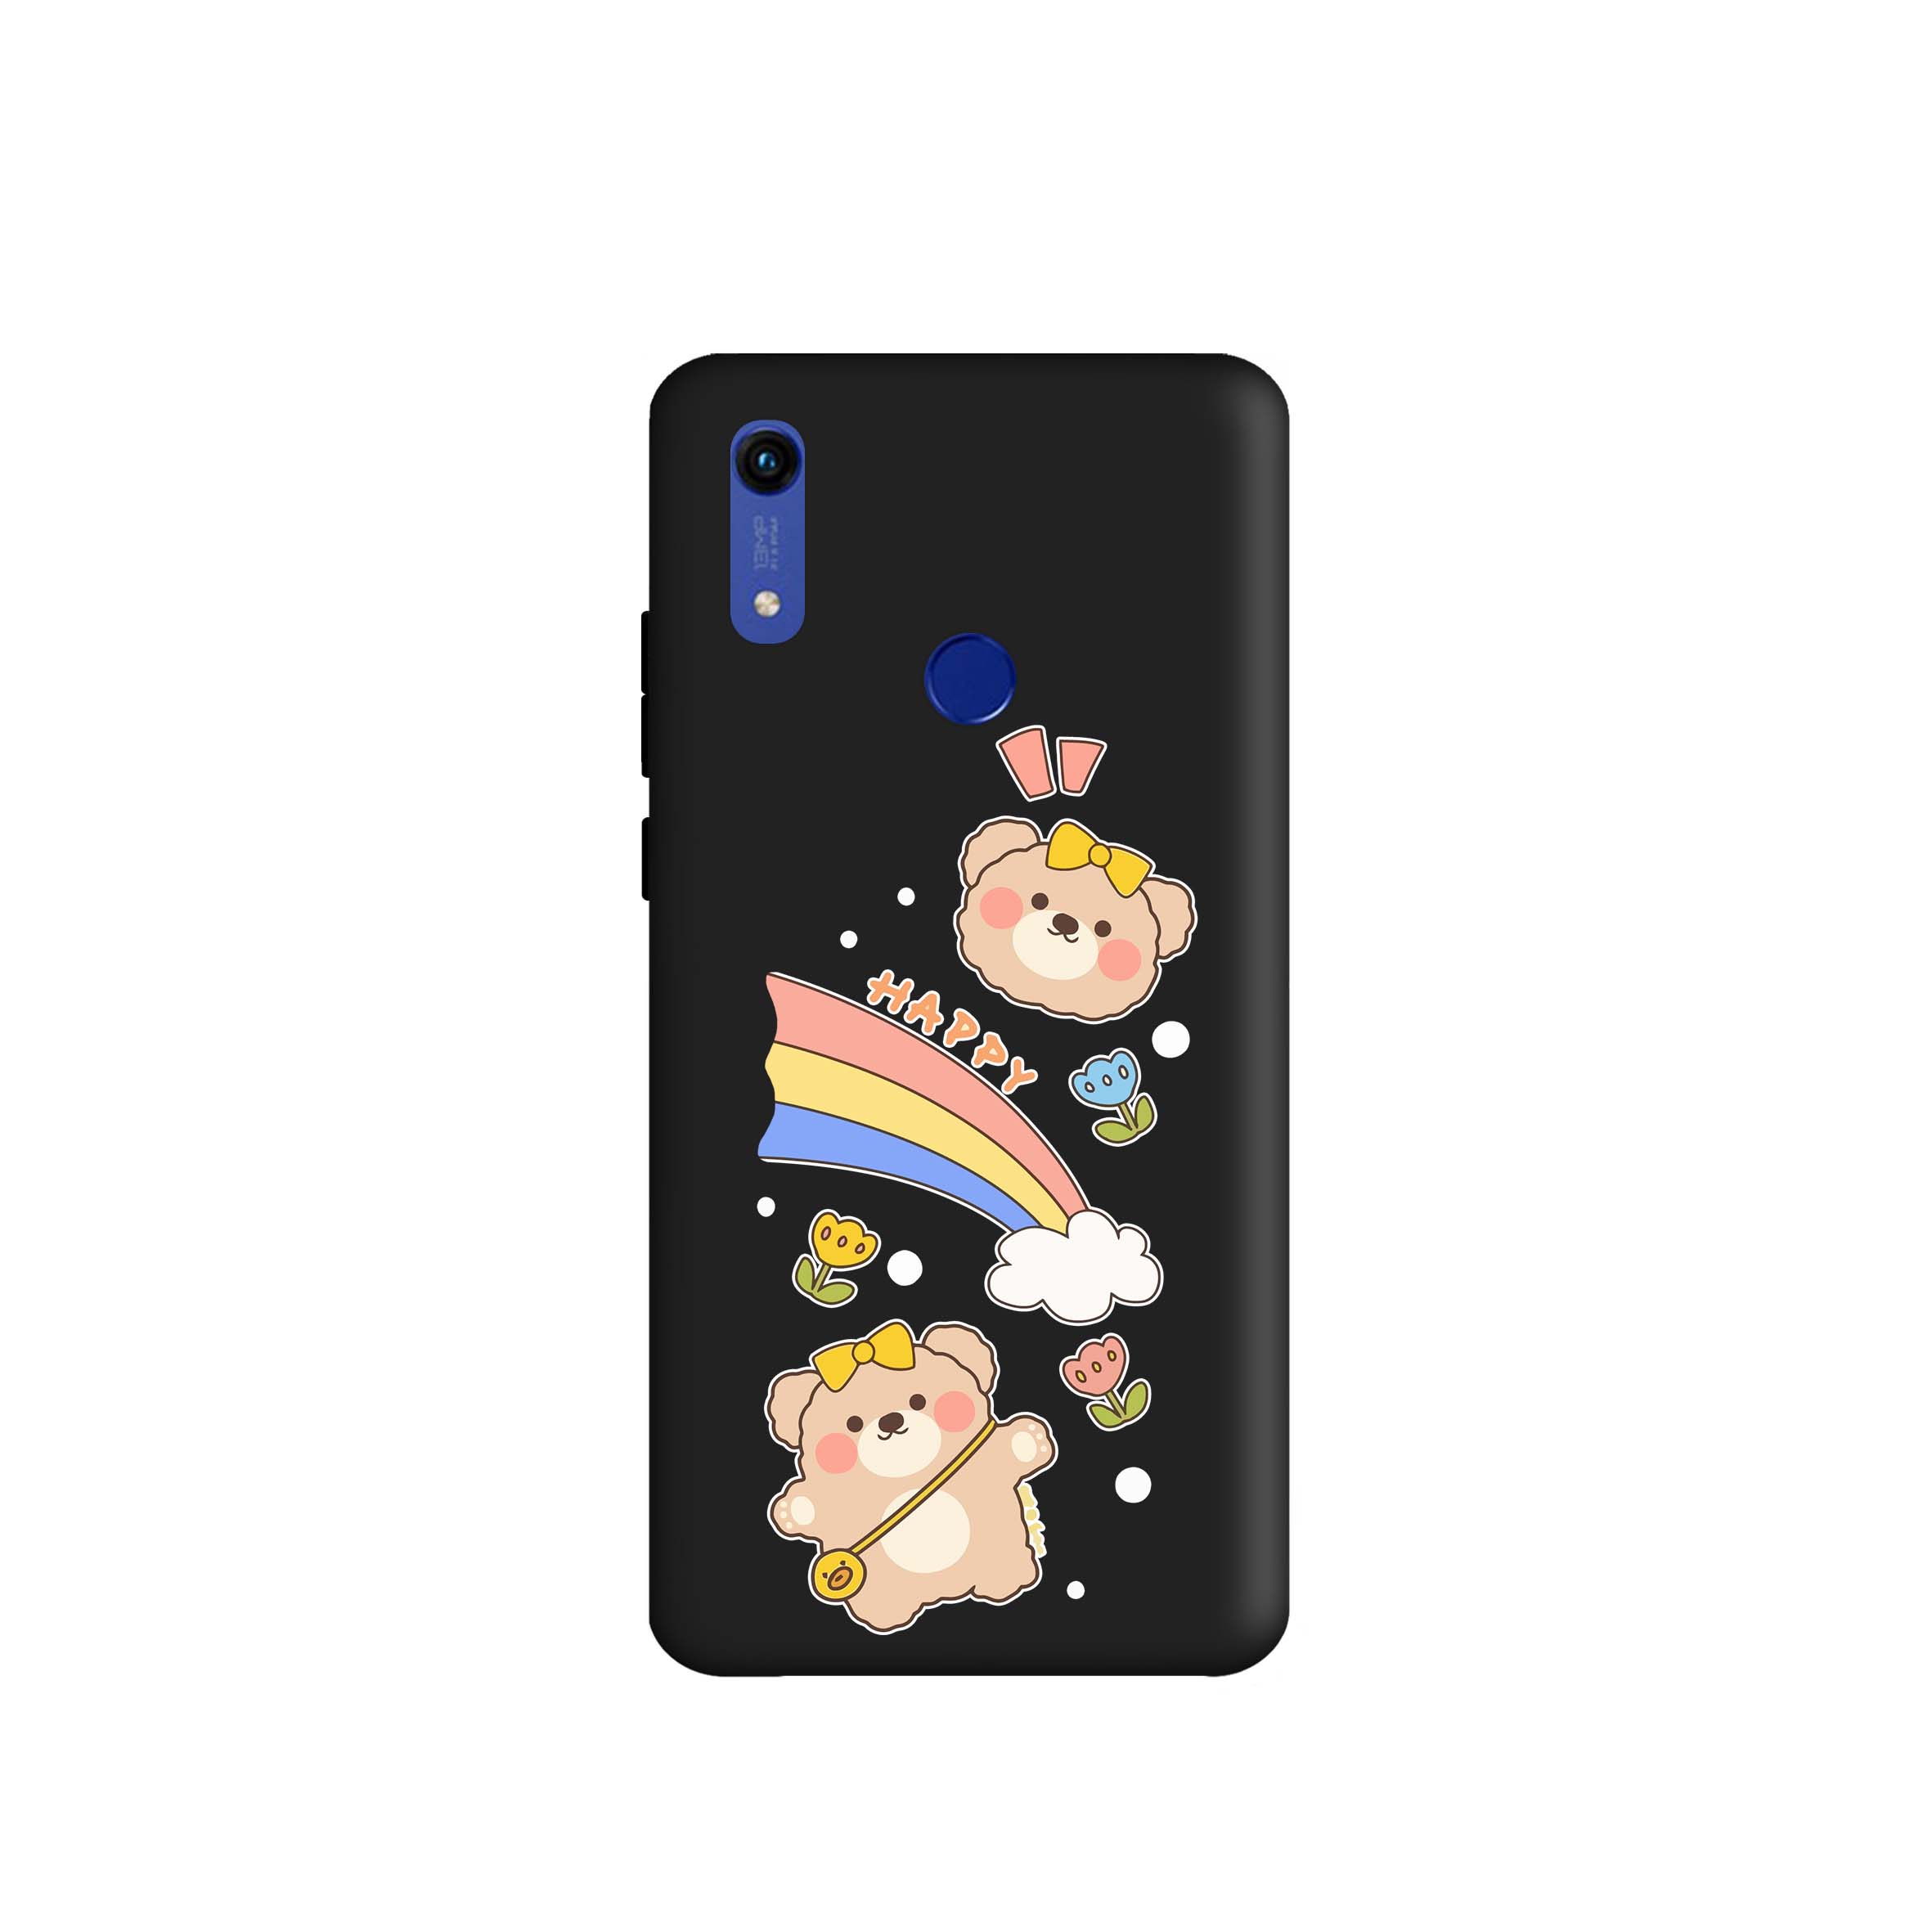 کاور طرح خرس رنگین کمان کد m3688 مناسب برای گوشی موبایل هواوی Y6 2019